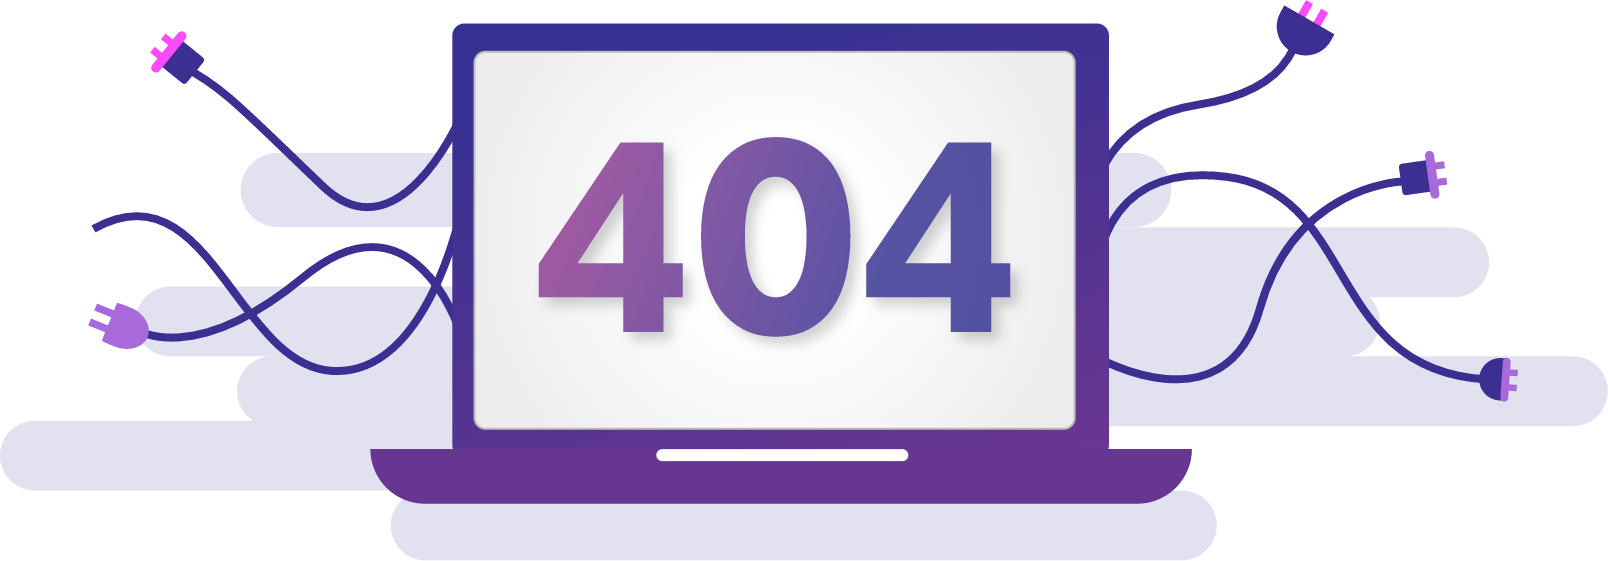 404 error desktop